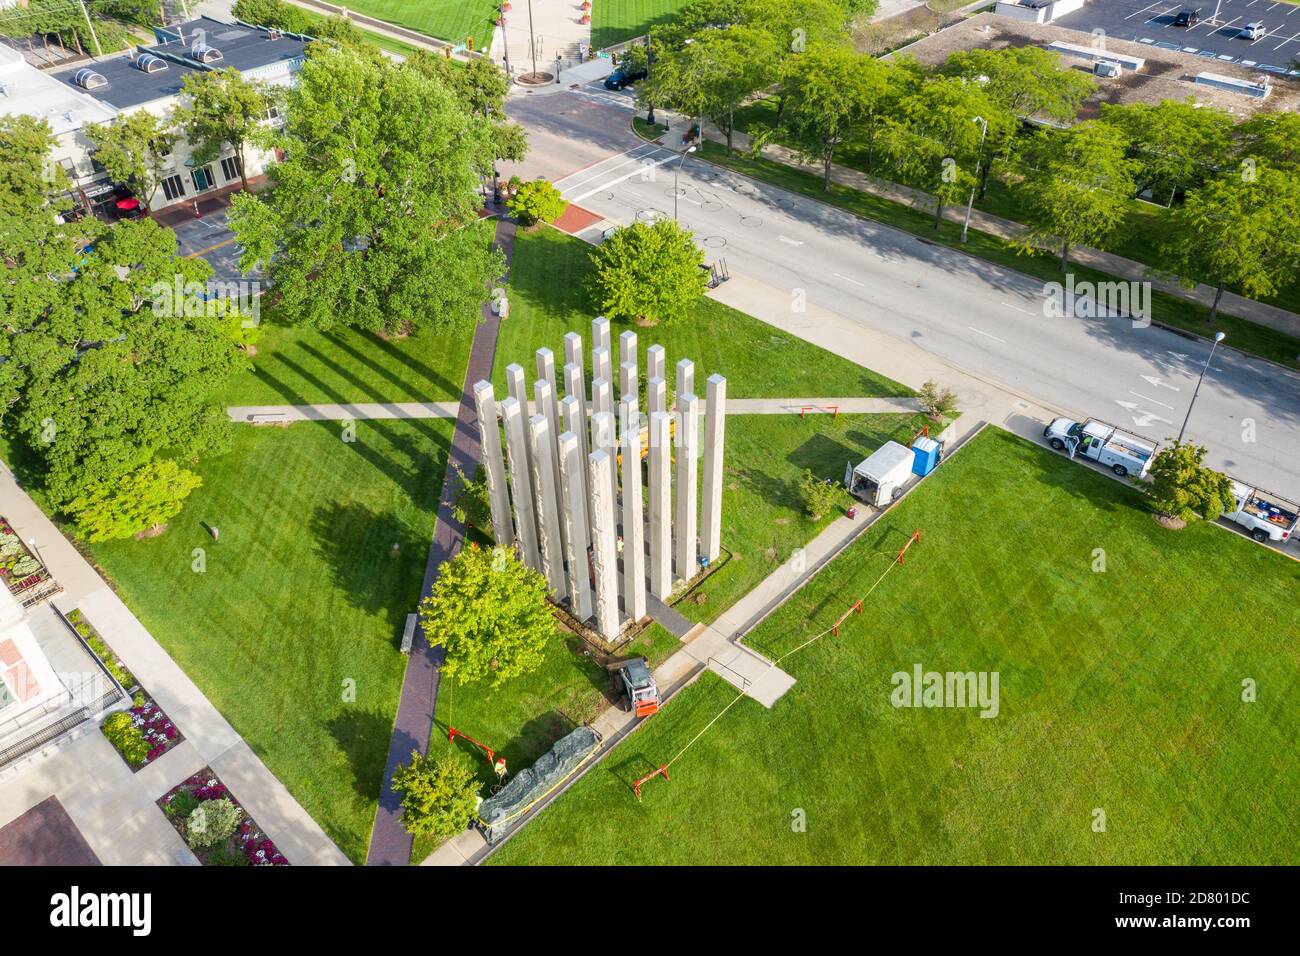 Pilares de piedra caliza, monumento conmemorativo a los veteranos del condado de Bartholomew, por Maryann Thompson Architects, 1997, Columbus, Indiana, EE.UU Foto de stock